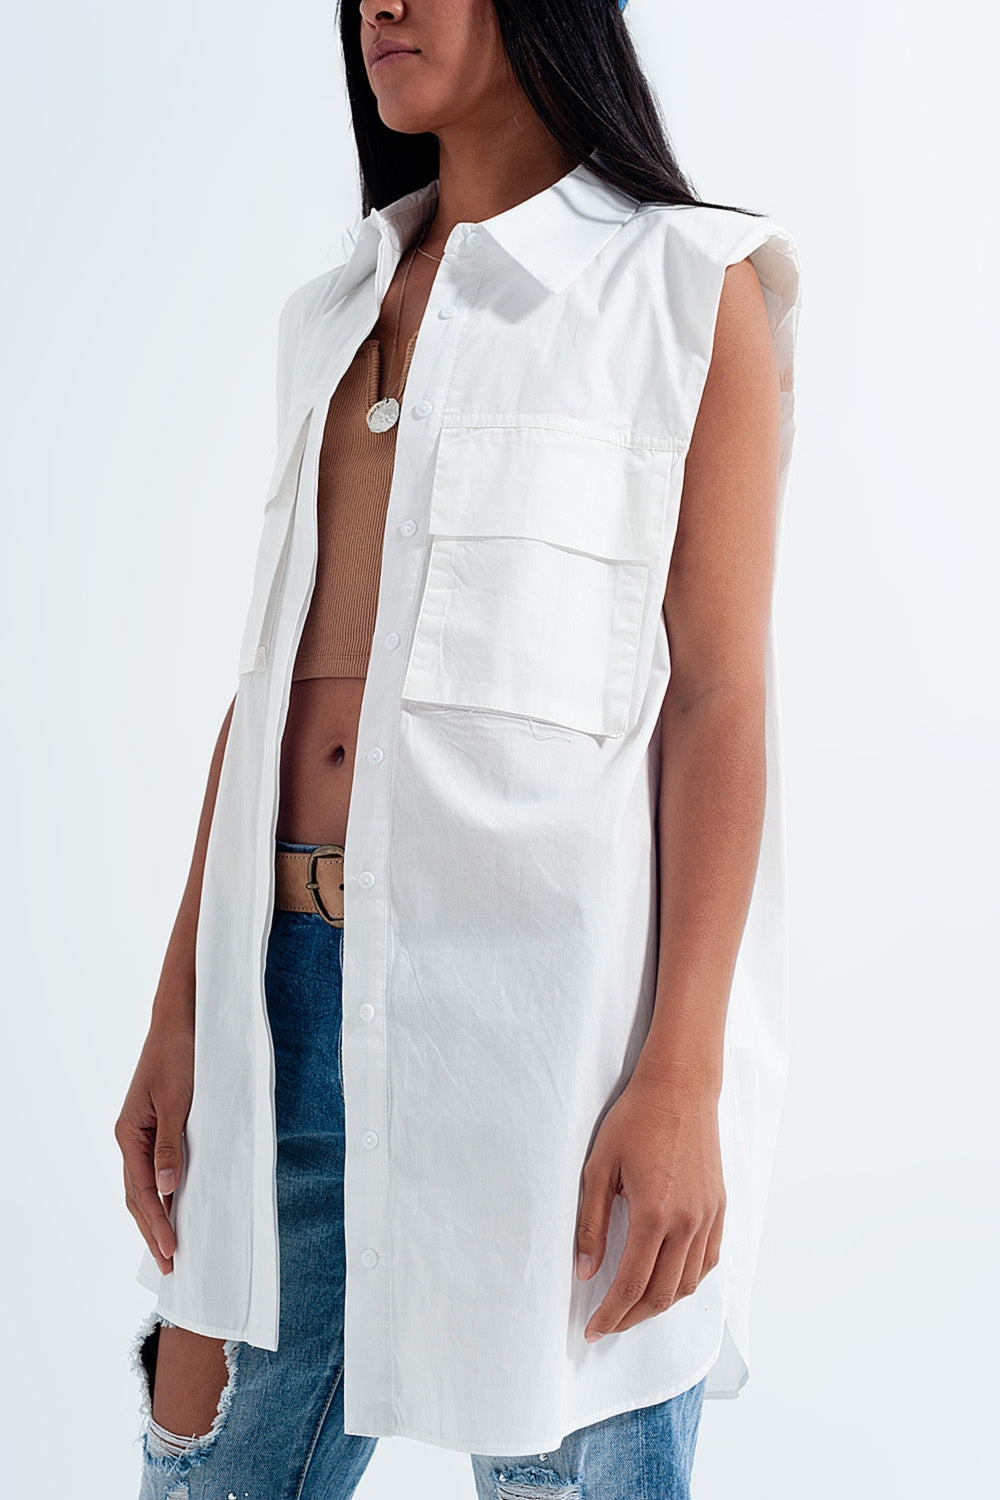 Camicia bianco poplin senza maniche con spalline e tasche utility